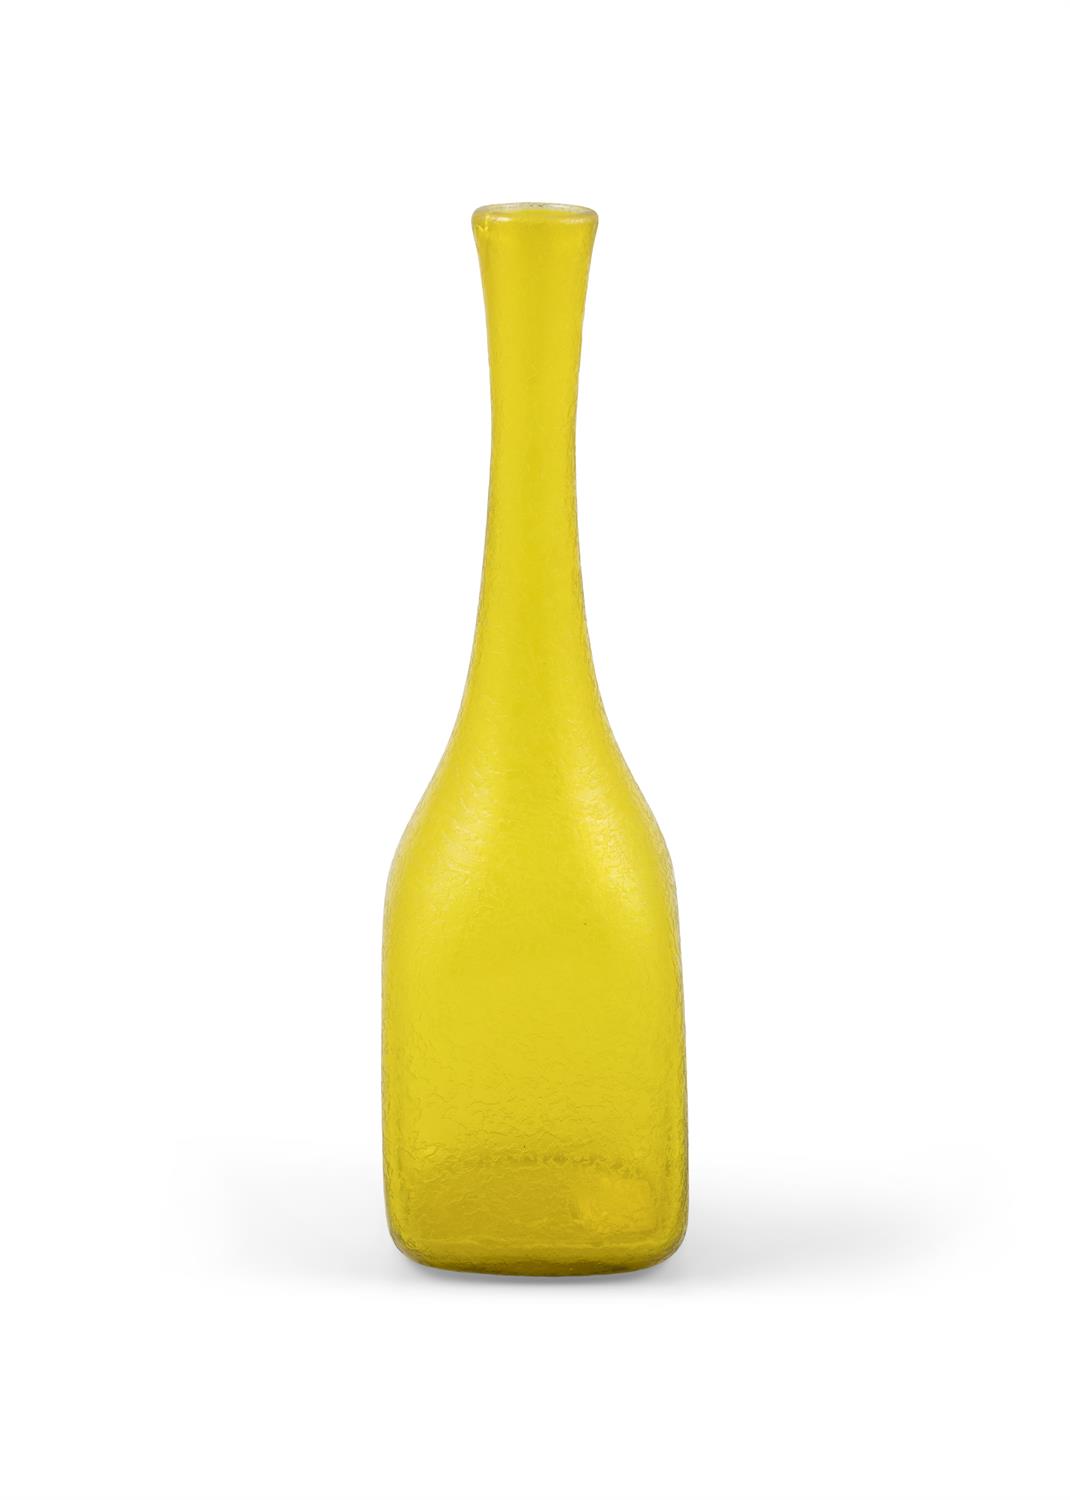 VASE A yellow vintage glass vase by Carlo Nason for Moretti & Nason. Italy, c. 1960. 29.5cm(h) - Bild 2 aus 2